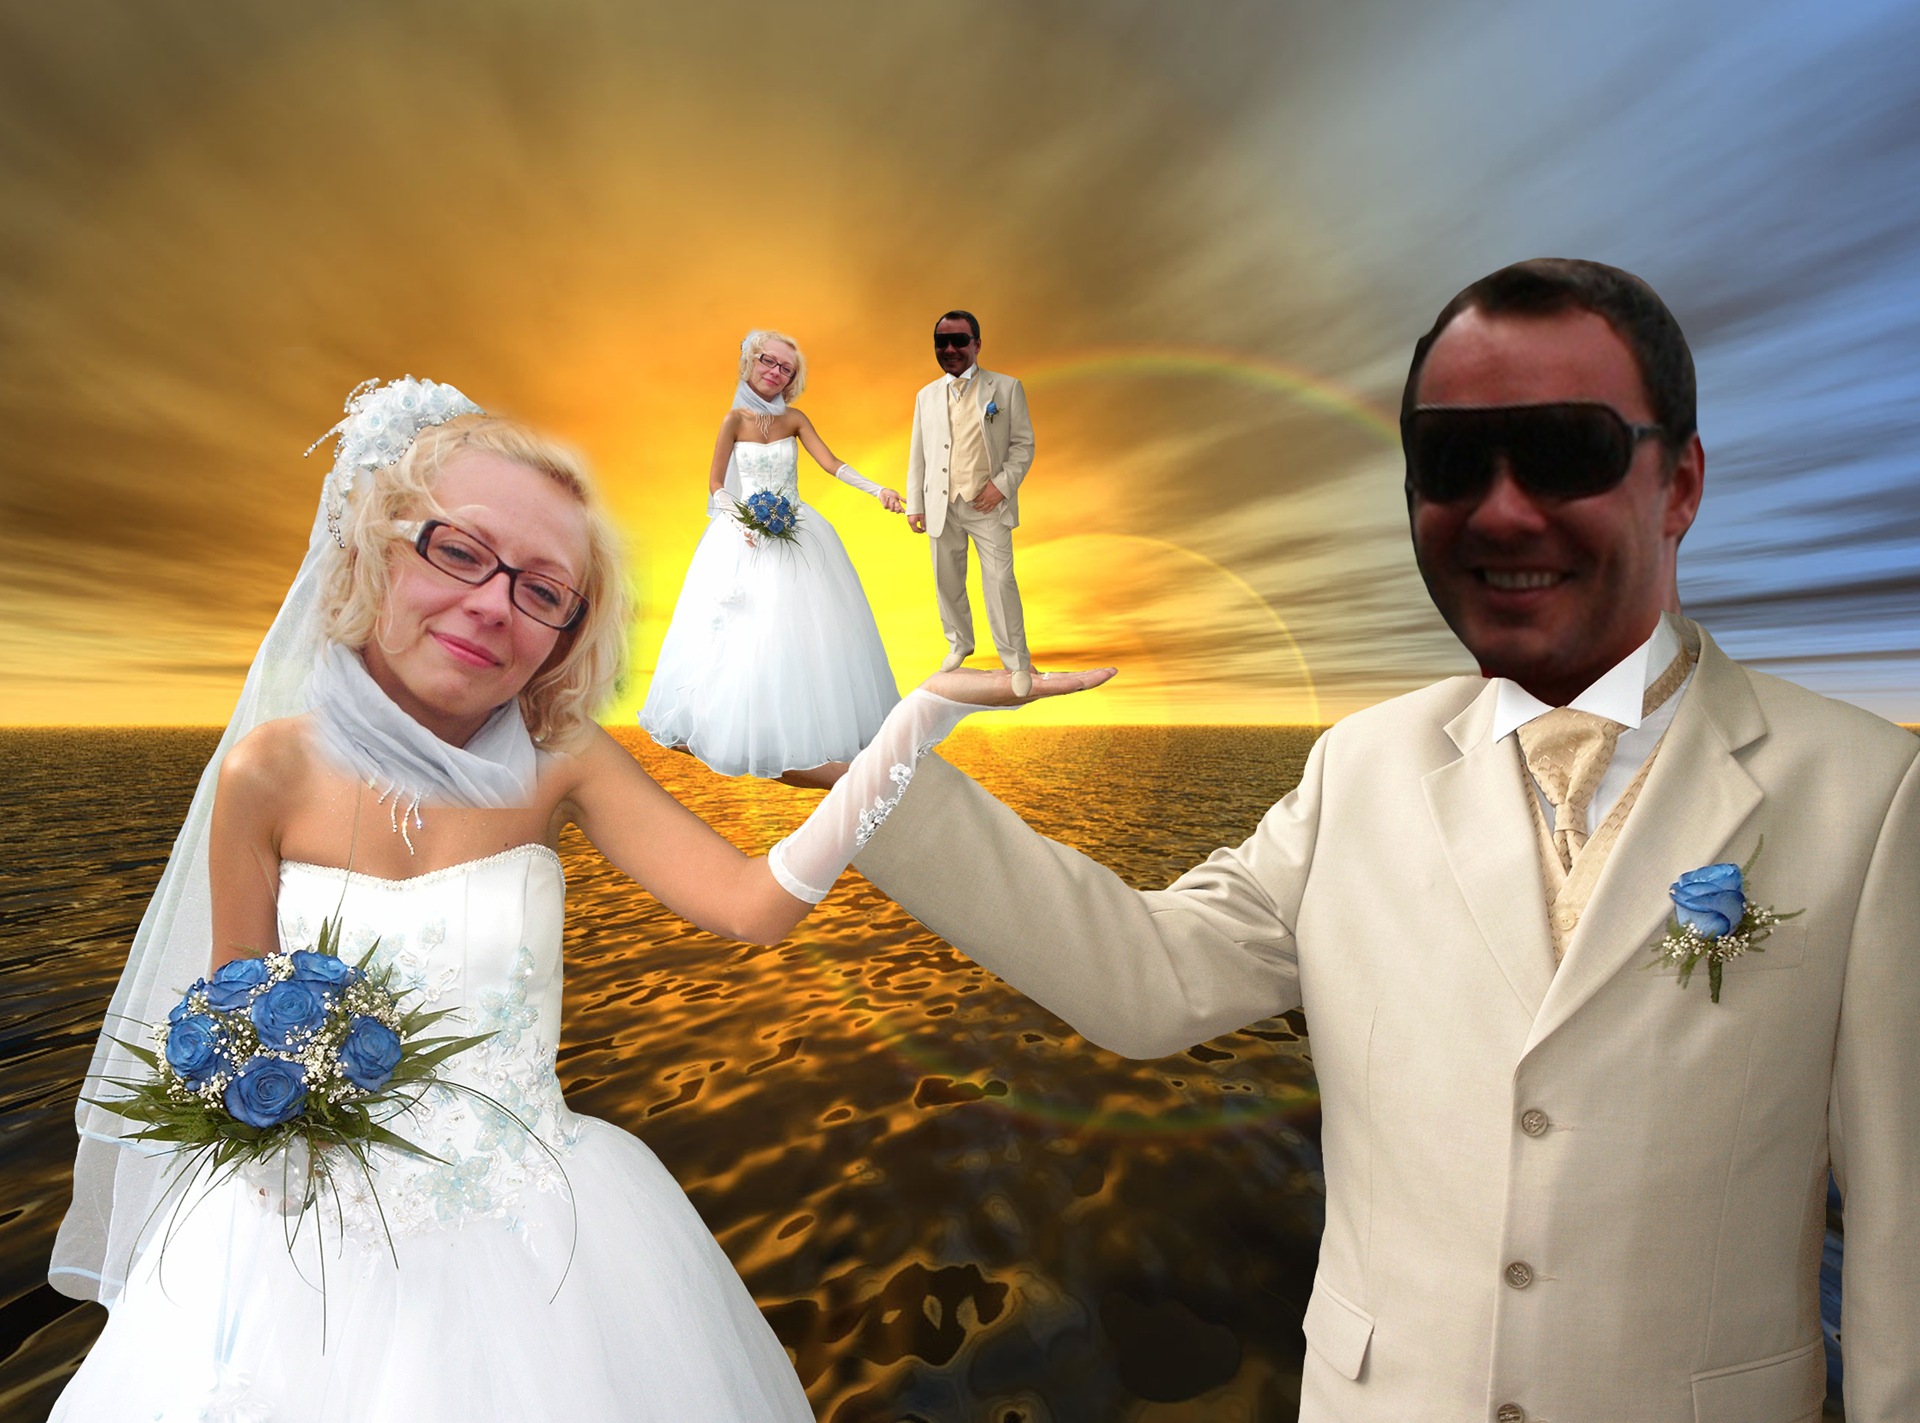 Вставить лицо в свадебные фото жених и невеста фотошоп онлайн